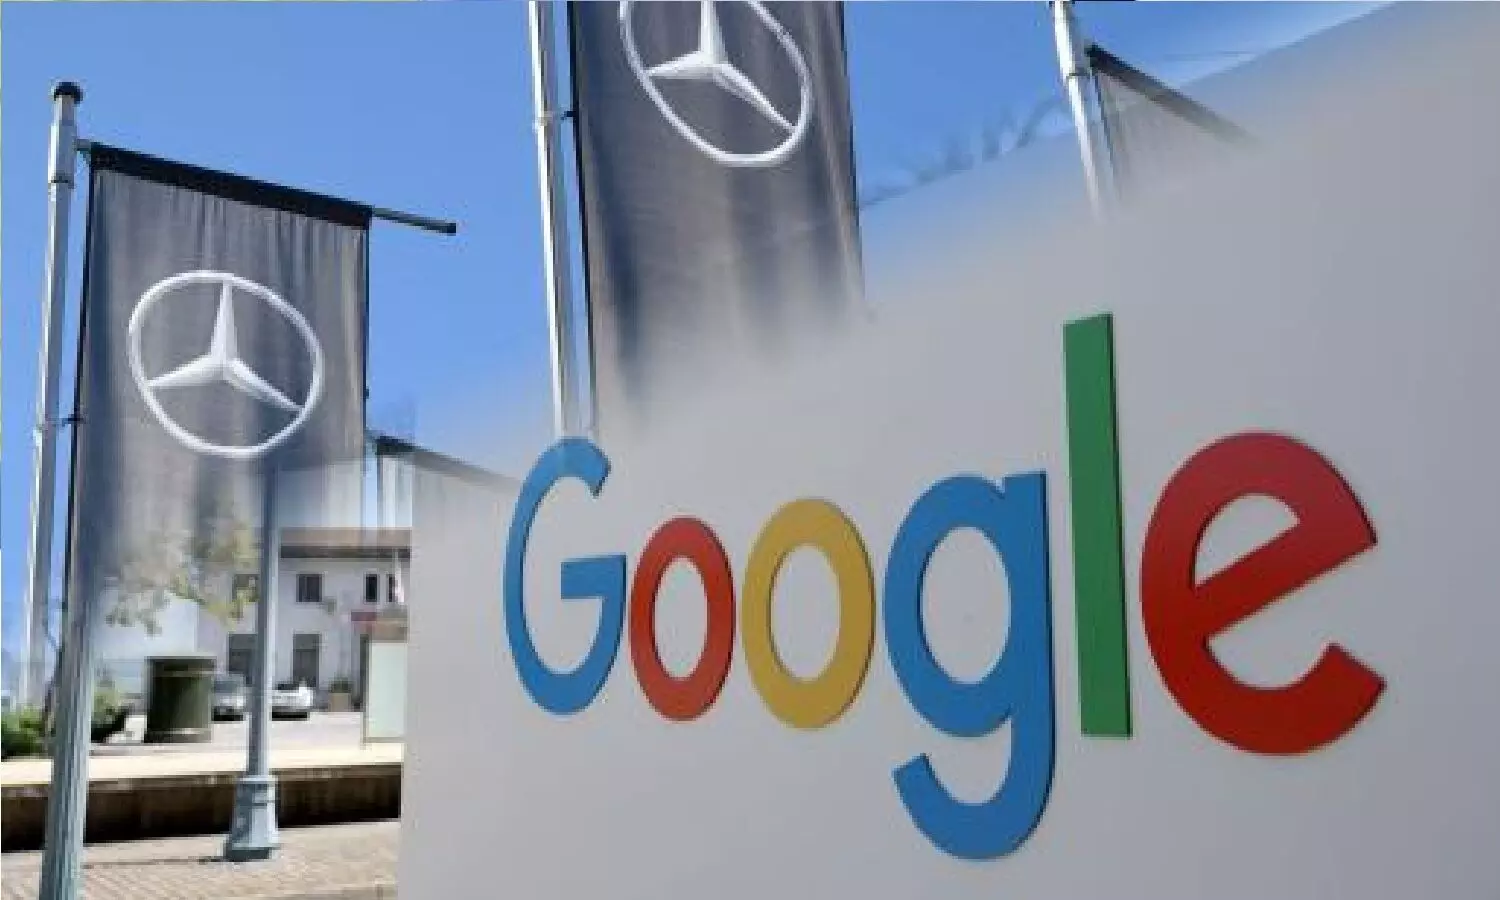 Mercedes Benz ने Google के साथ की पार्टनरशिप! अब मर्सिडीज की गाड़ियों में Google Maps और Youtube मिलेगा